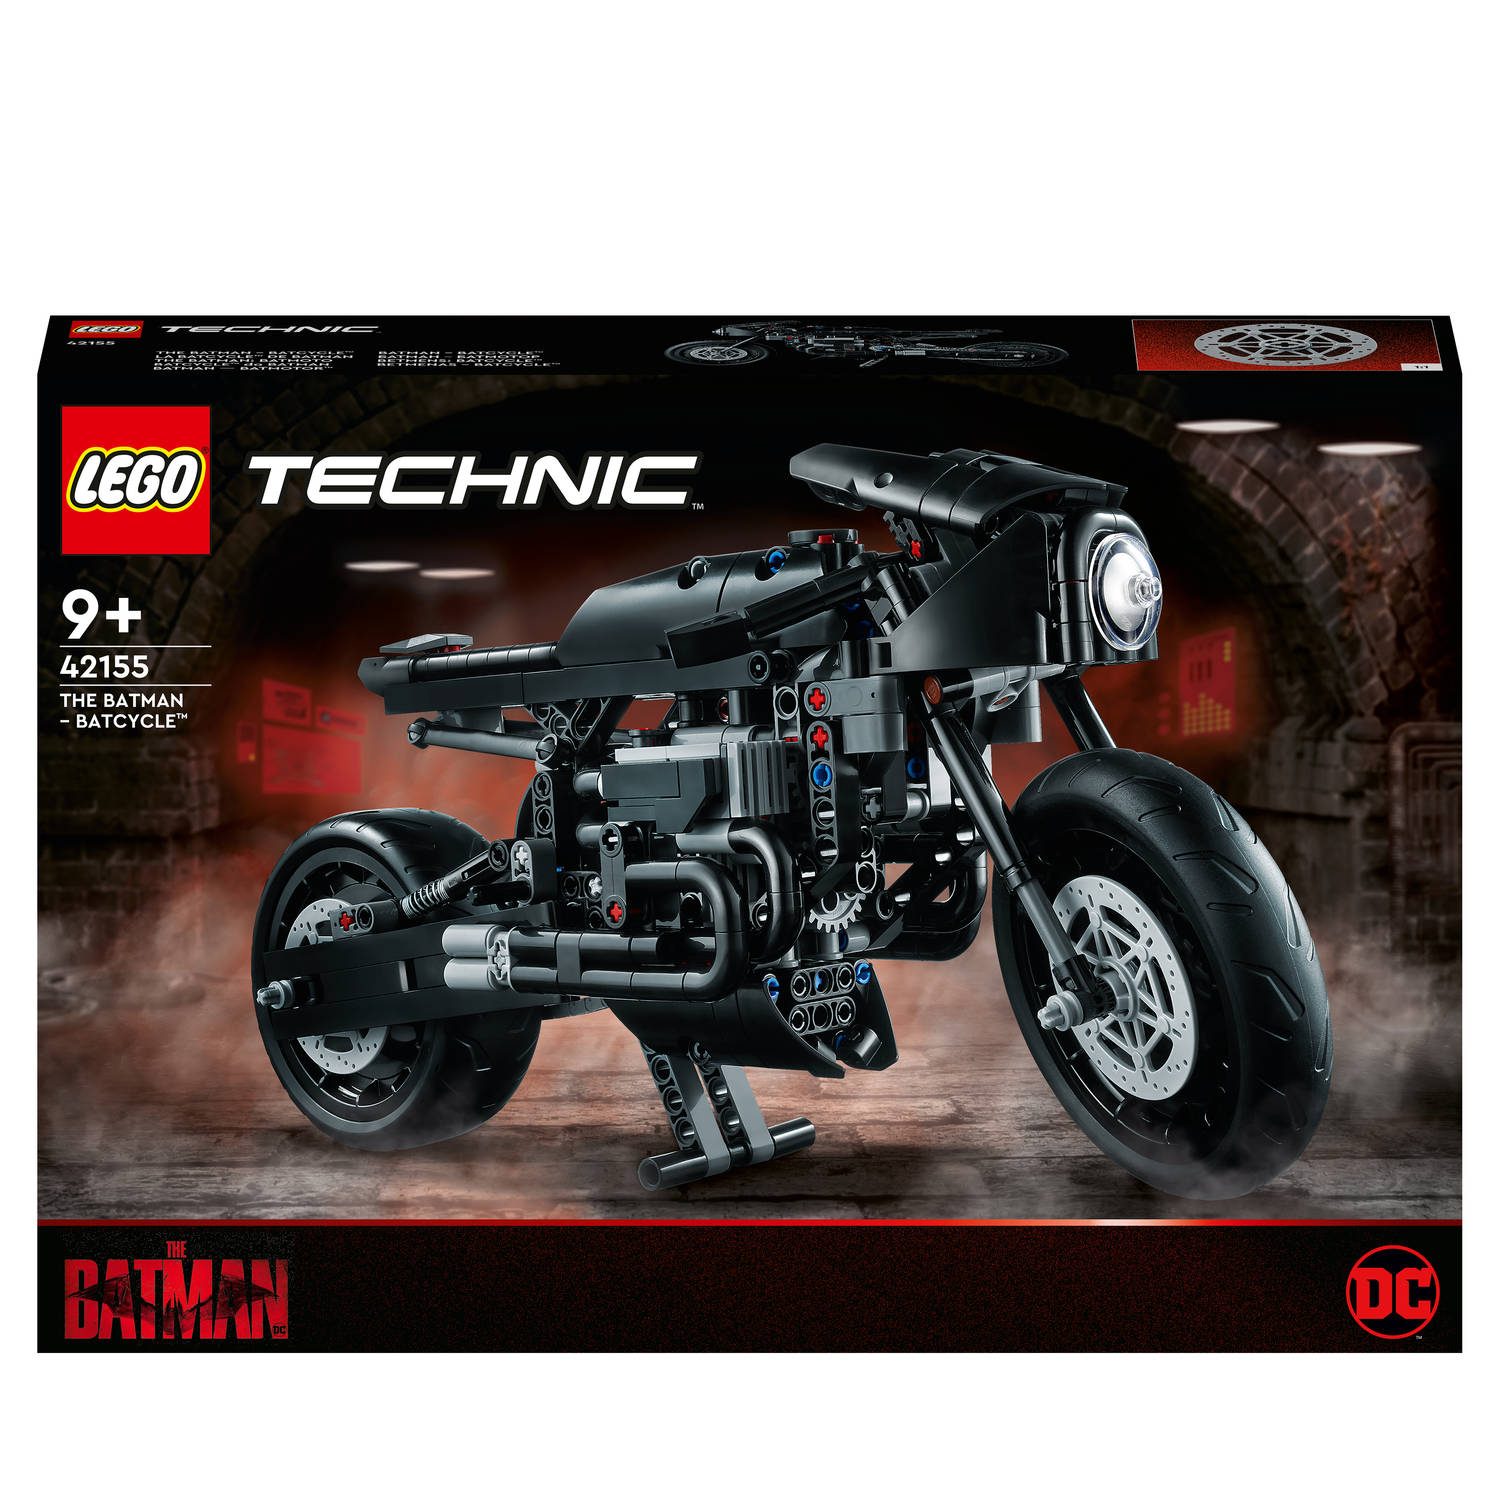 LEGOÂ® Technic 42155 THE BATMAN â BATCYCLE